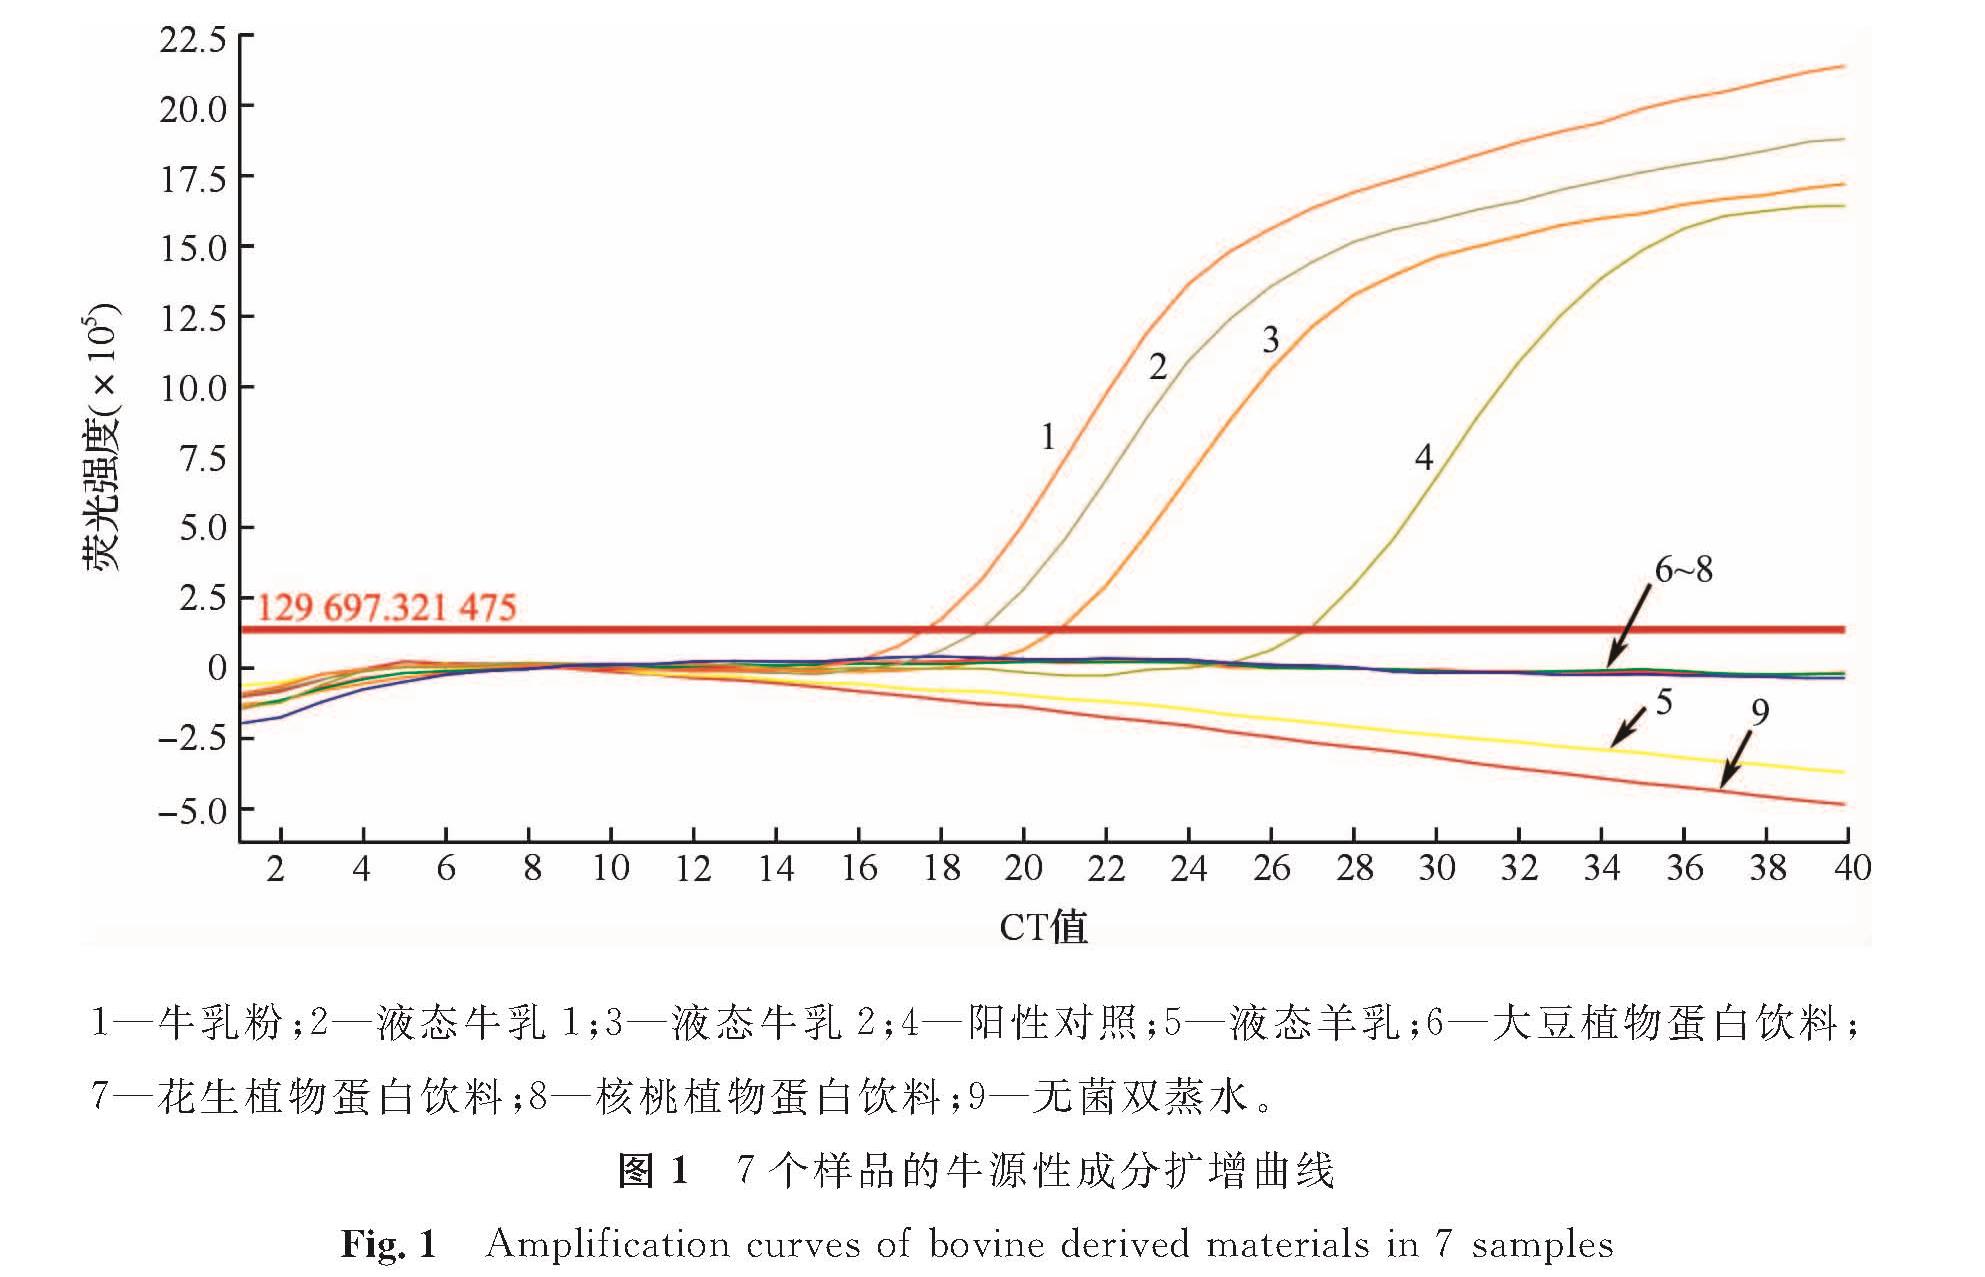 图1 7个样品的牛源性成分扩增曲线<br/>Fig.1 Amplification curves of bovine derived materials in 7 samples